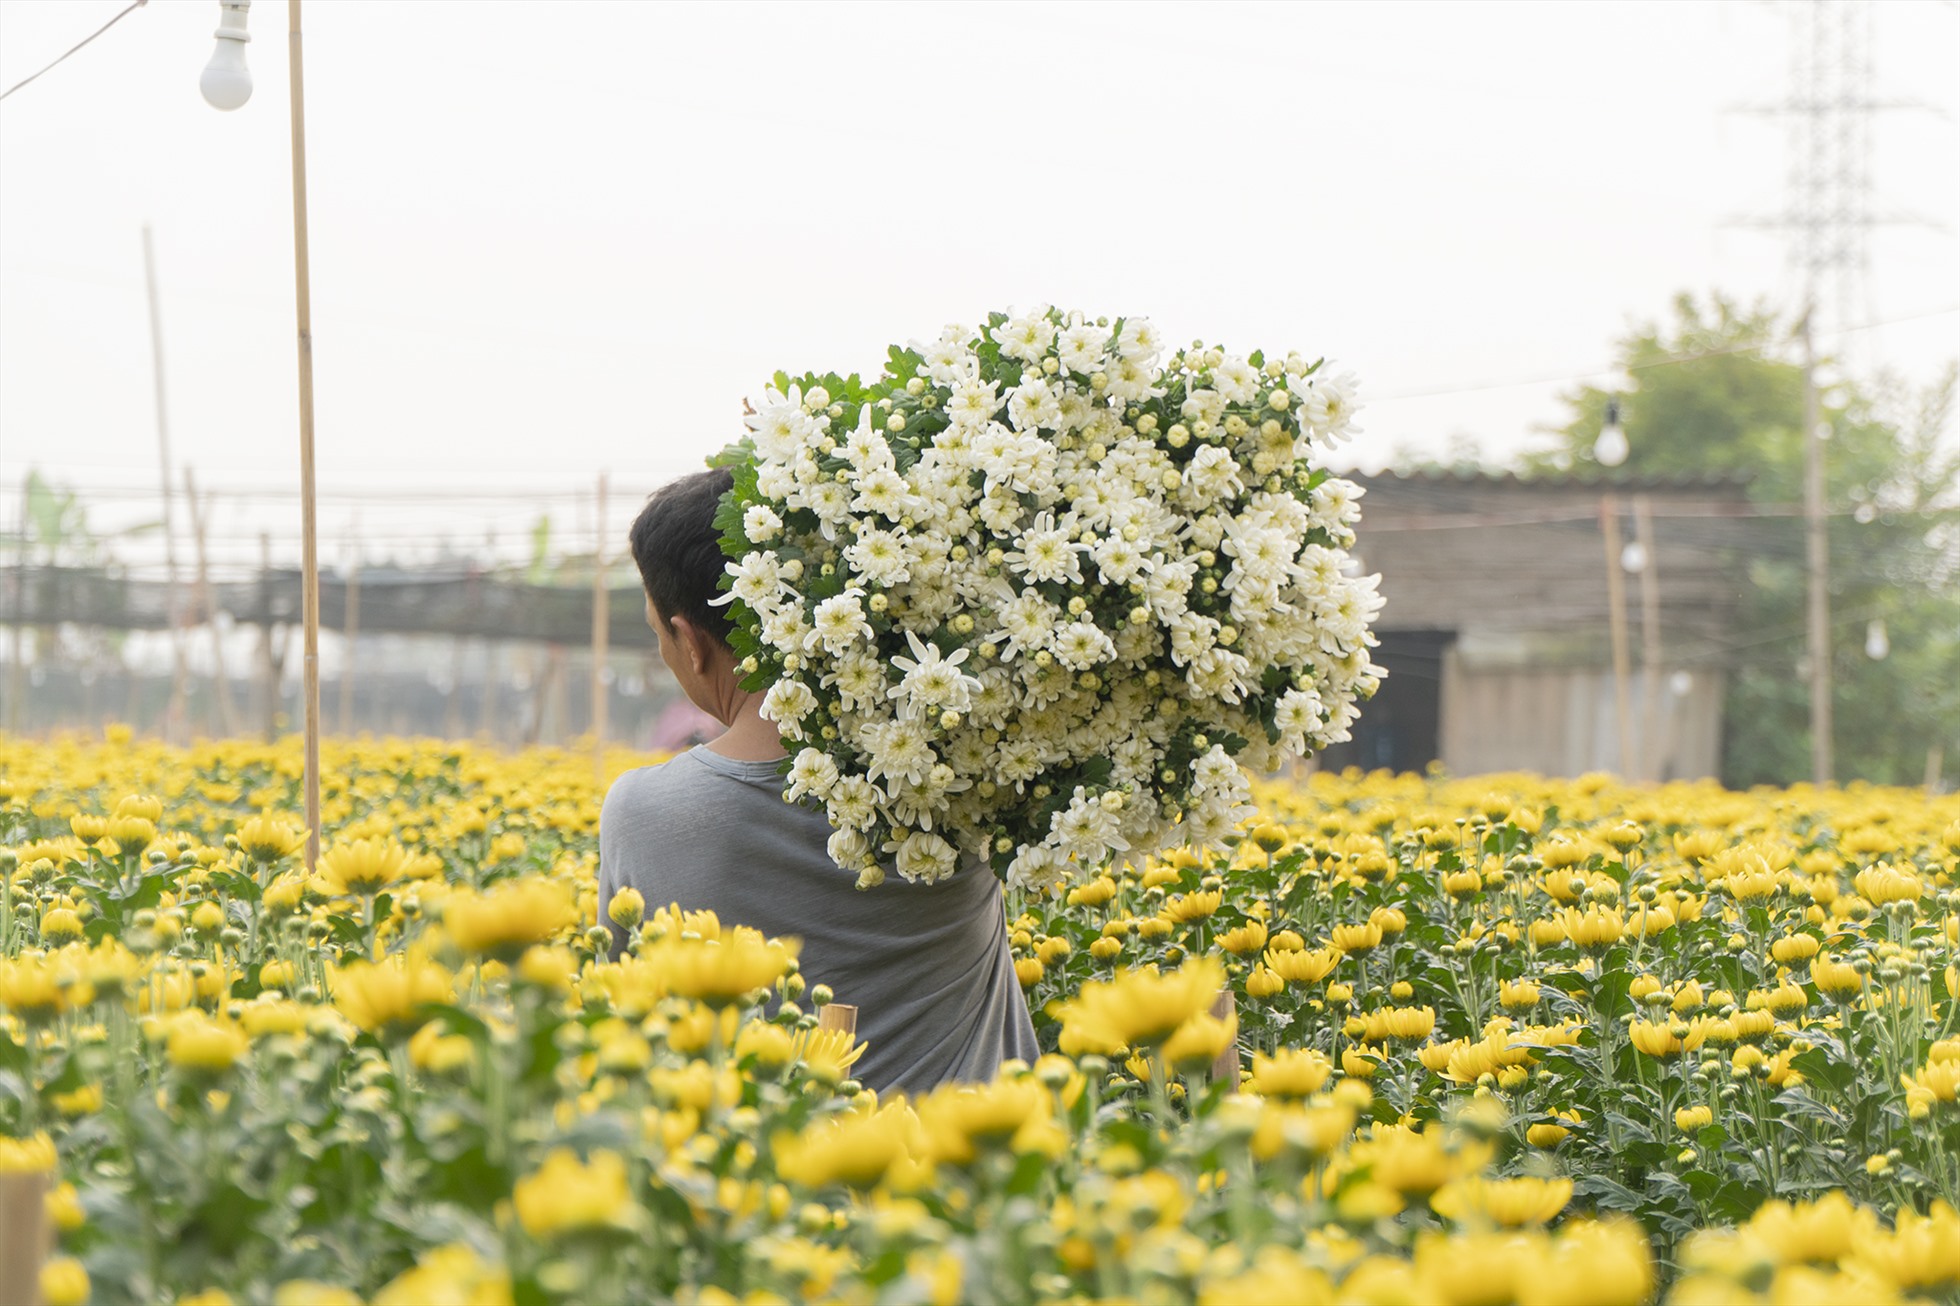 Làng hoa Tây Tựu cách trung tâm Hà Nội 20 km về phía Tây, trước đây thuộc xã Tây Tựu, huyện Từ Liêm, nay là phường Tây Tựu, quận Bắc Từ Liêm, Hà Nội. Đây là một trong những vùng trồng hoa có diện tích lớn nhất và lâu đời tại thủ đô.